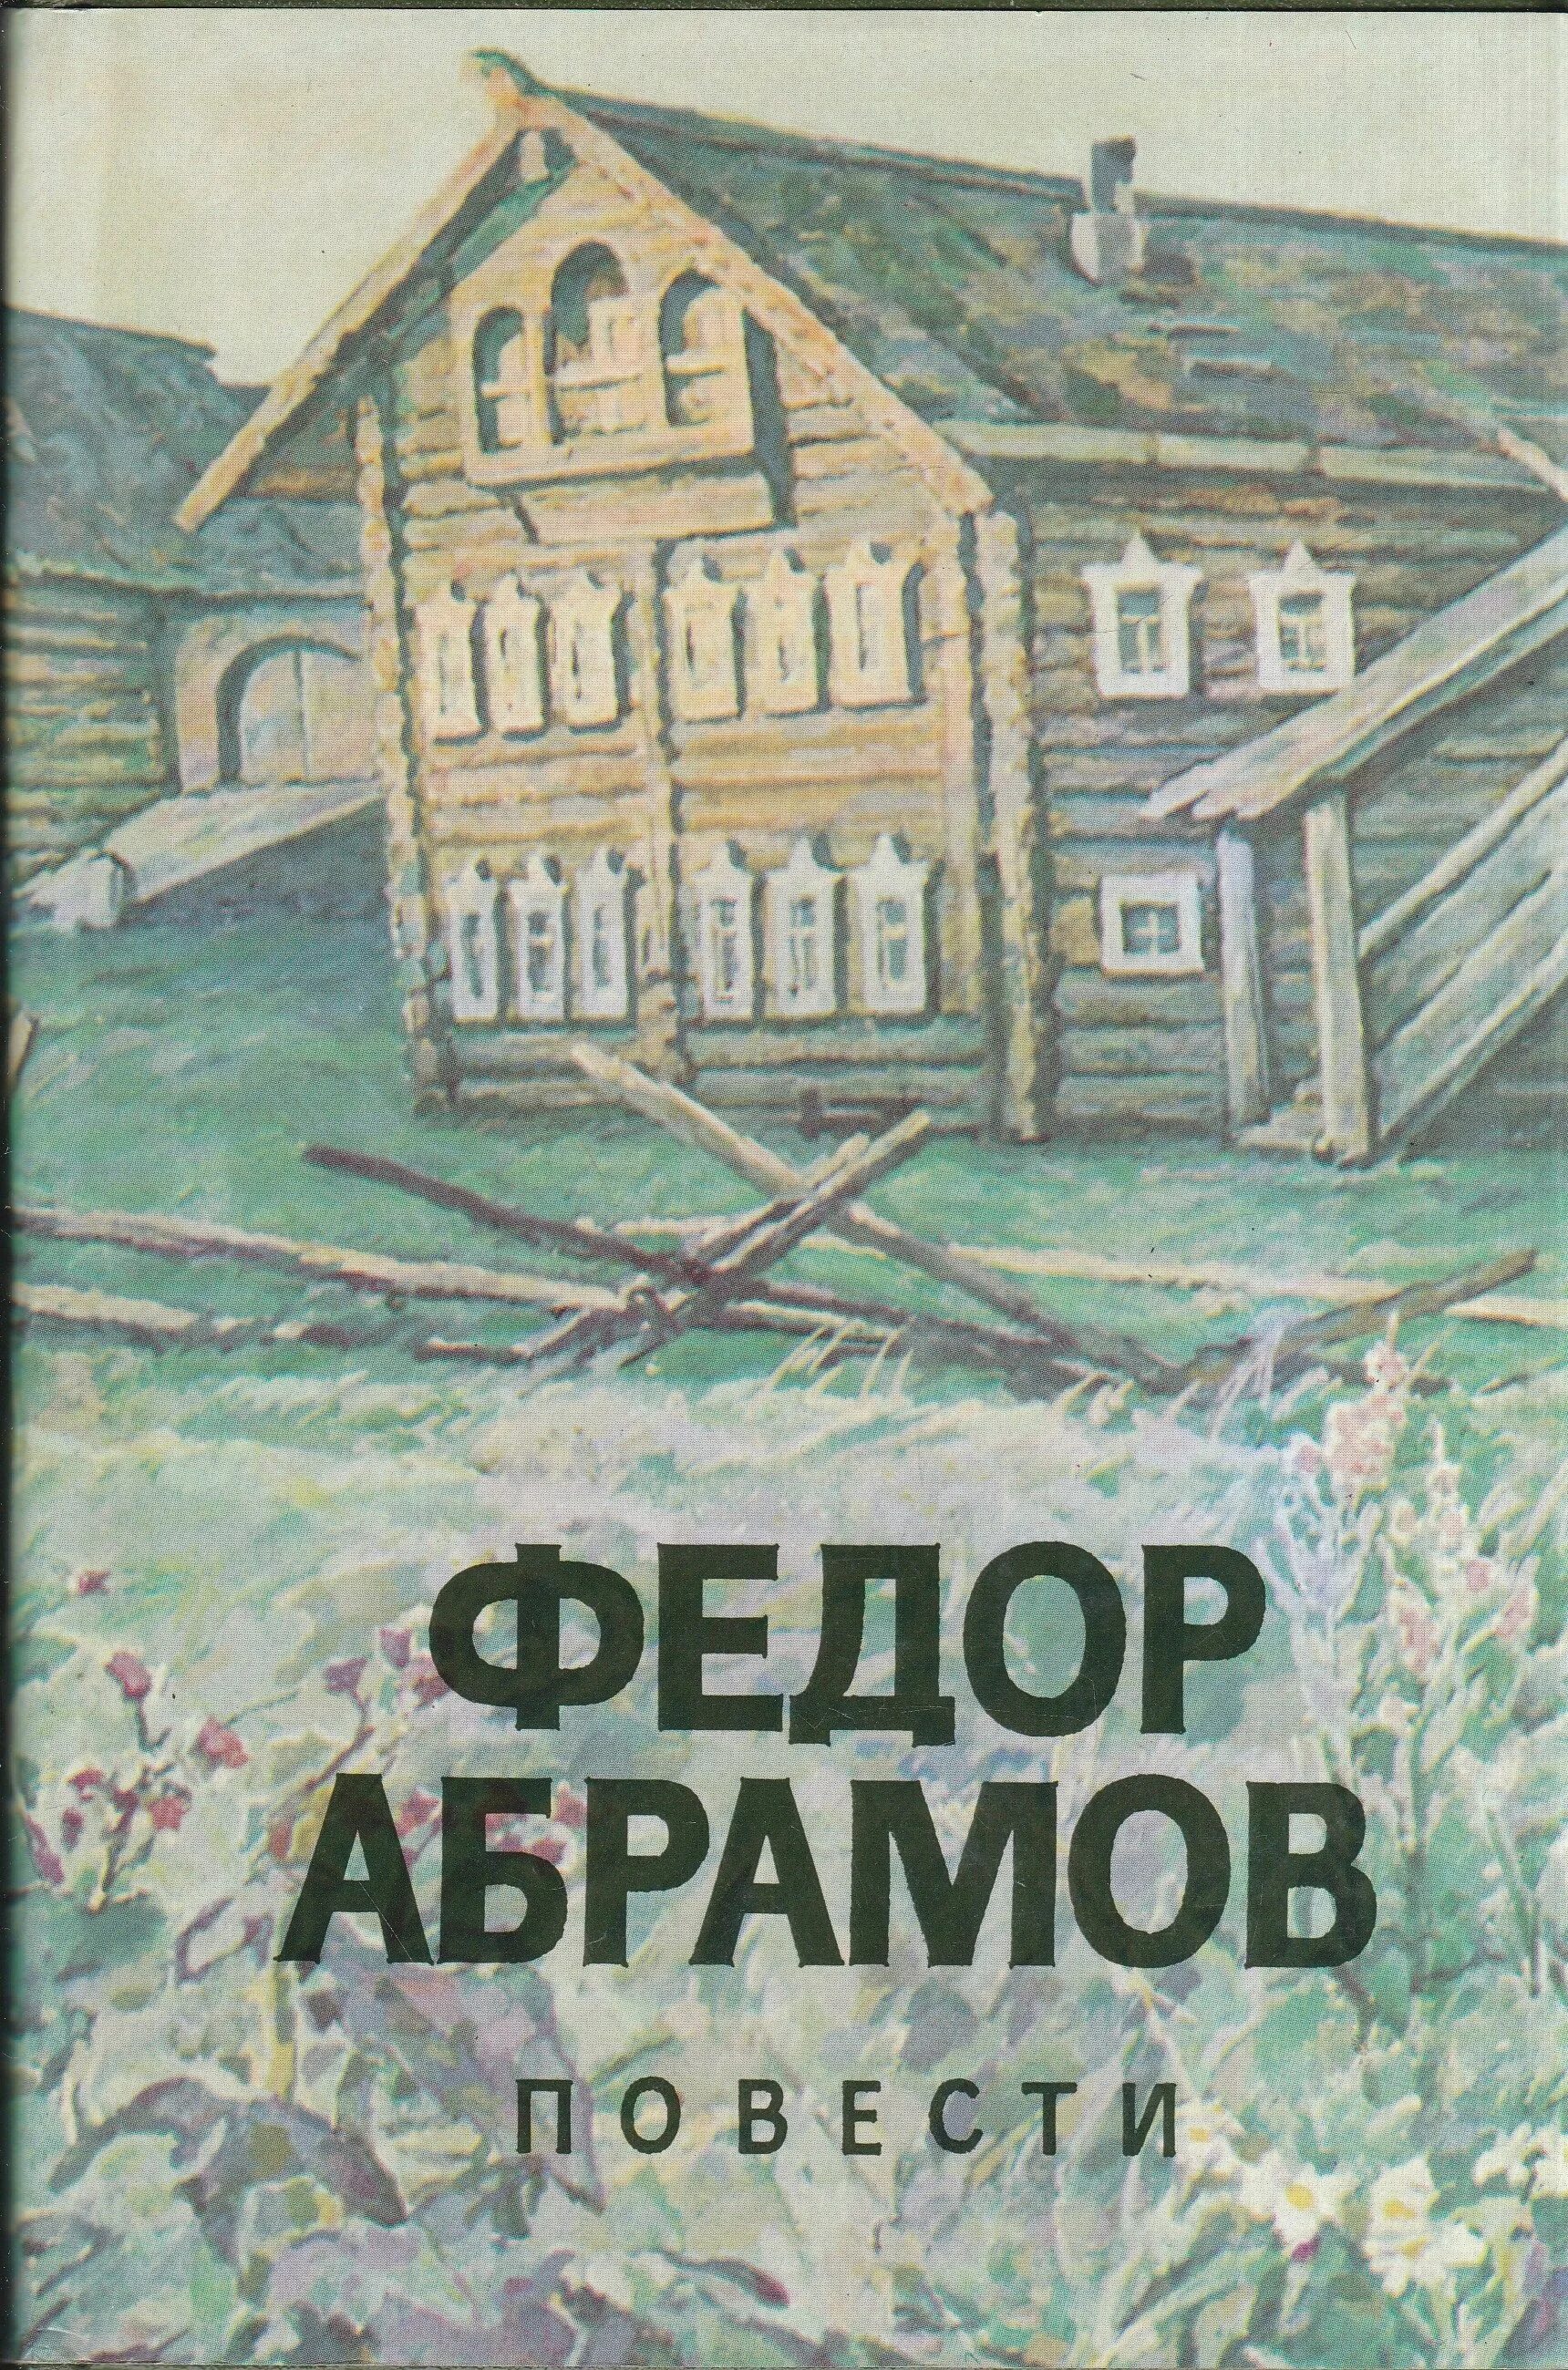 Книги Федора Абрамова обложки. Ф.Абрамов повести 1989.